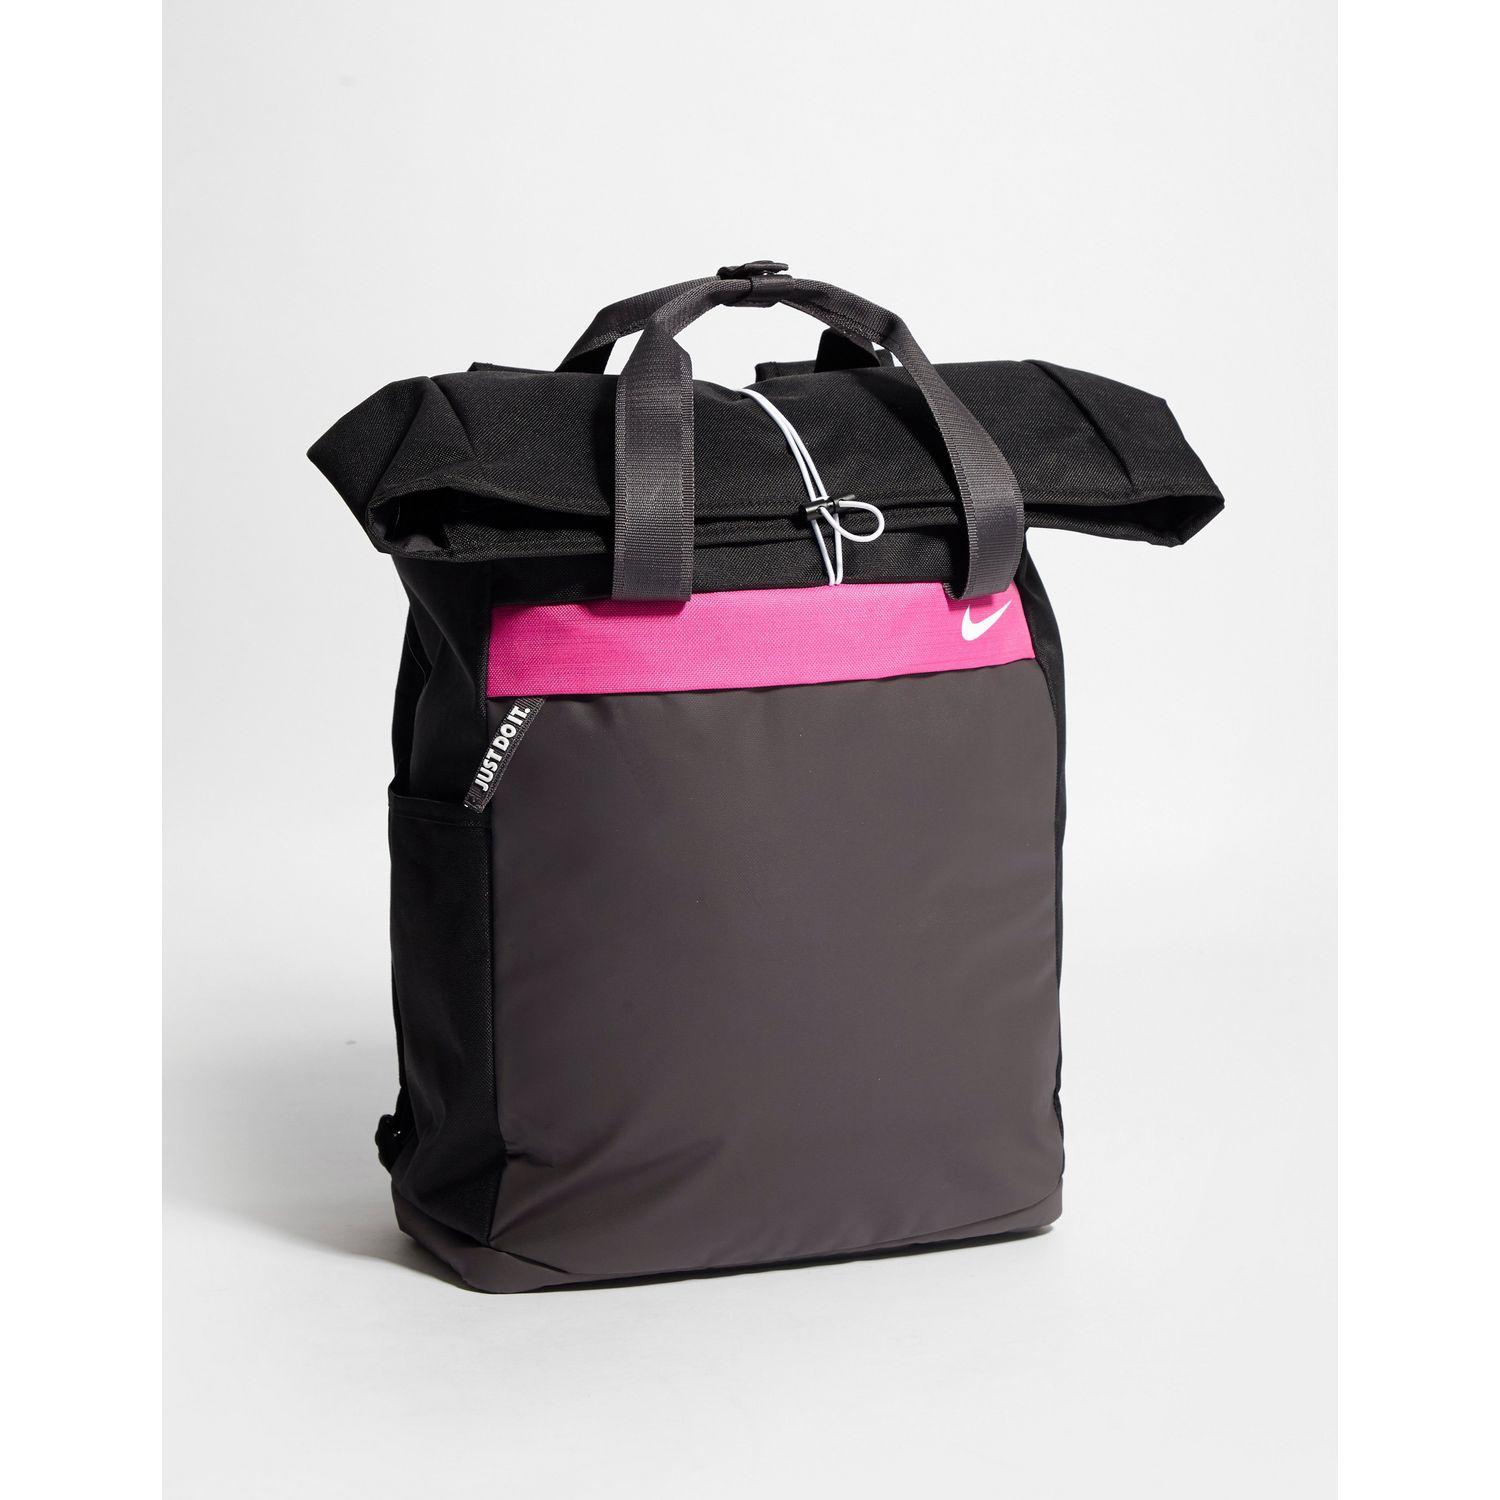 Nike Radiate Backpack in Black/Pink 